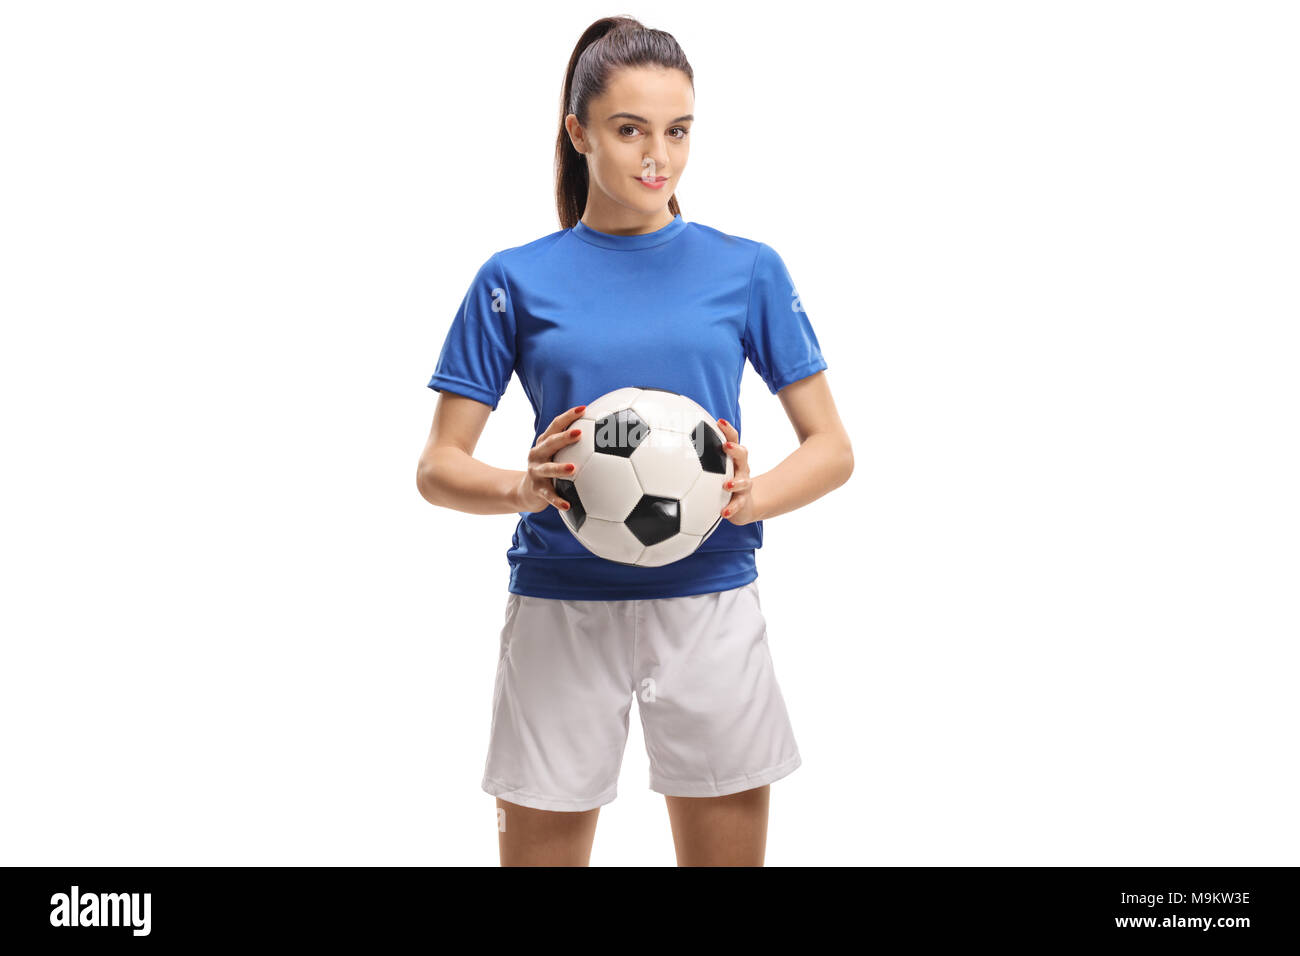 Calcio femminile player tenendo un calcio isolati su sfondo bianco Foto Stock